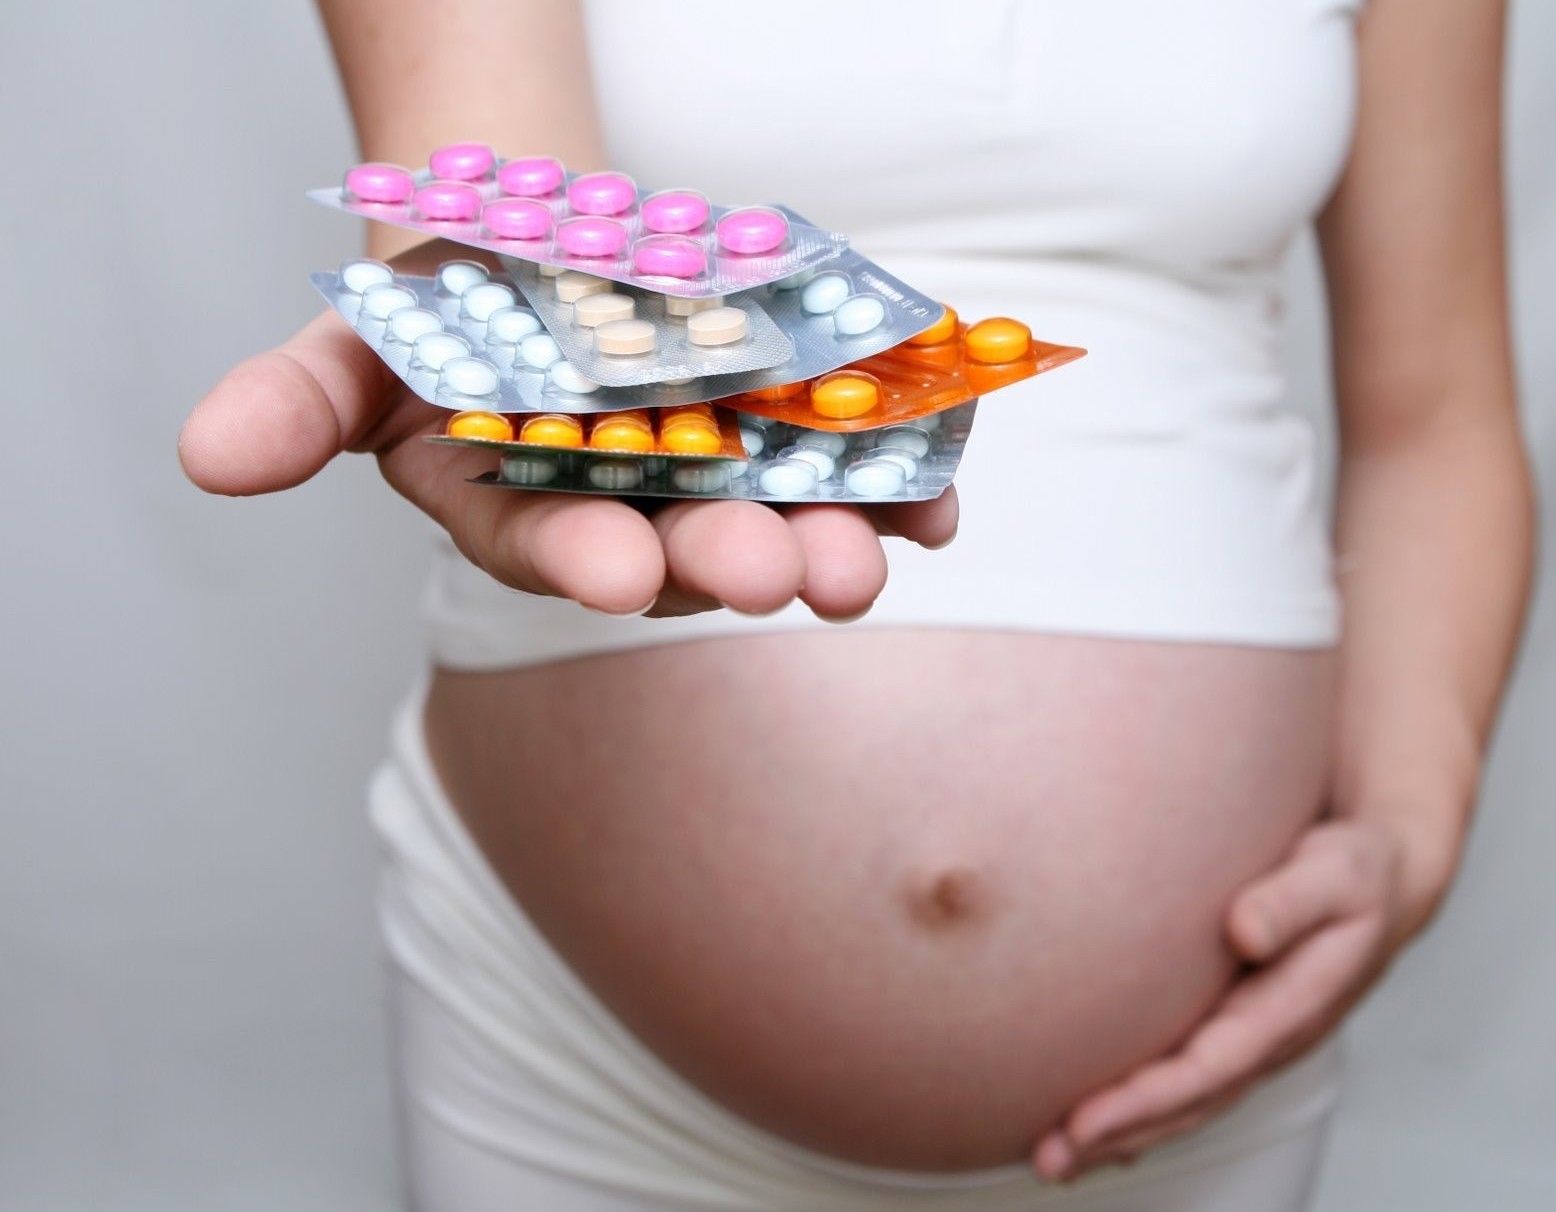 Применение анальгетиков во время беременности бесследное?